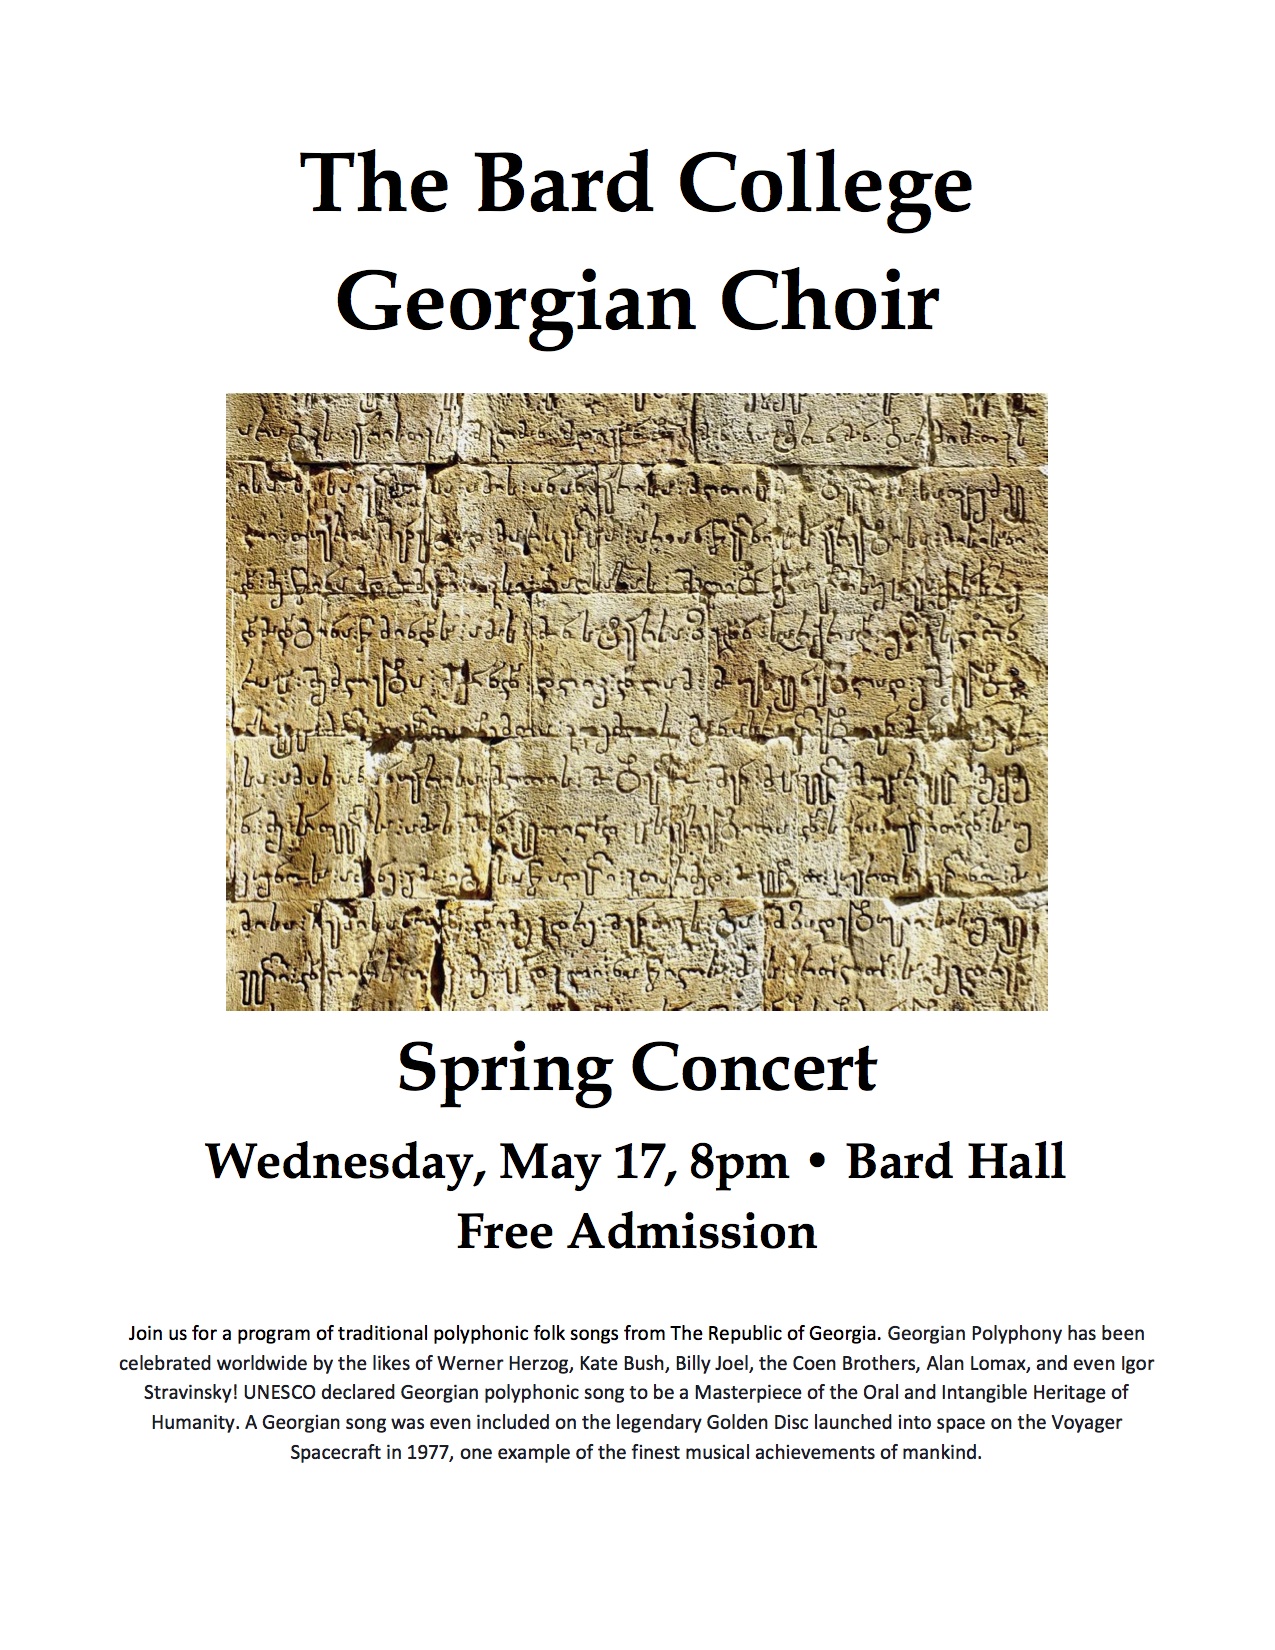 The Bard College Georgian Choir&nbsp;